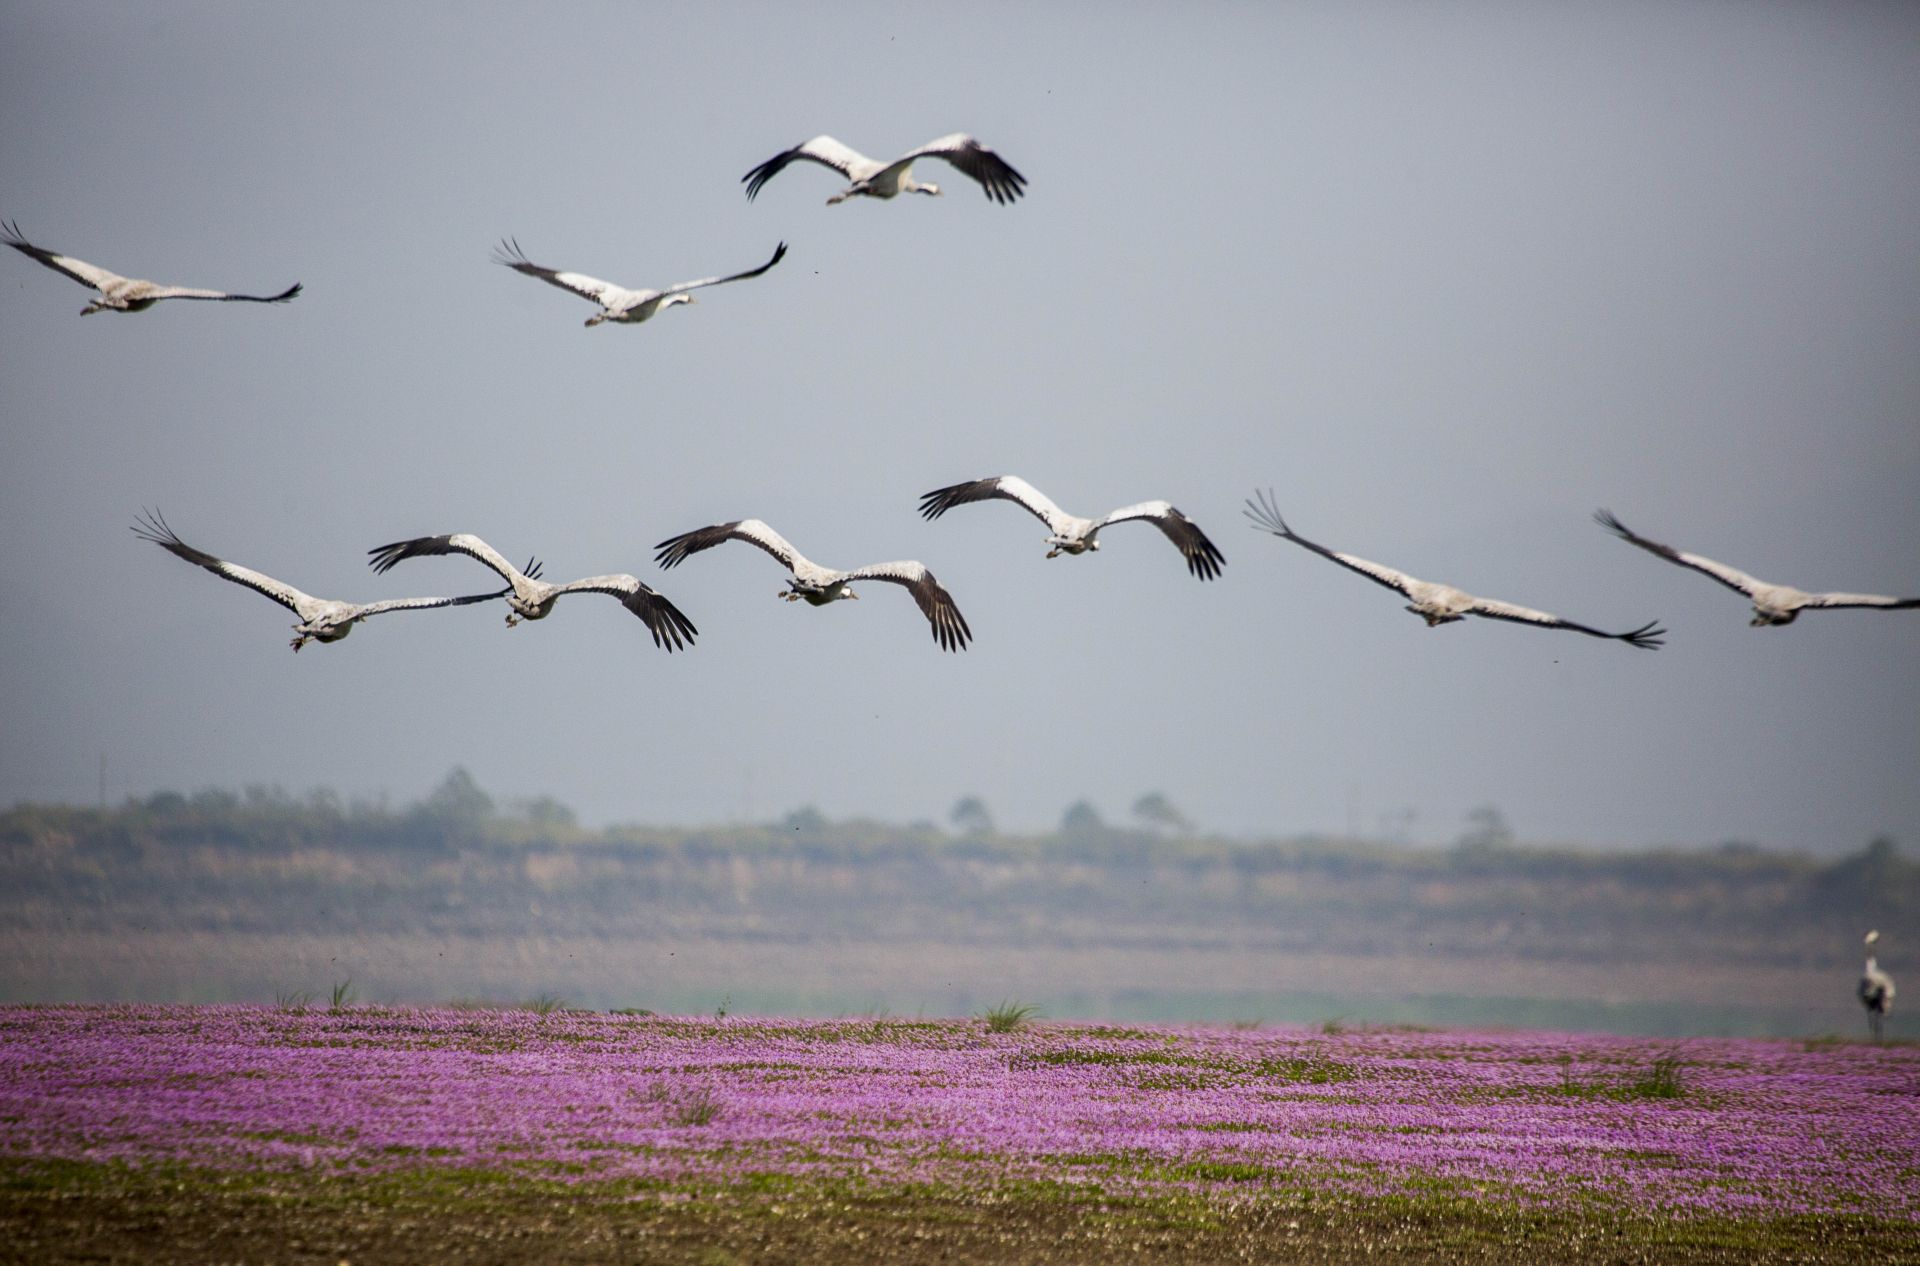 鄱阳湖冬季候鸟种类图片